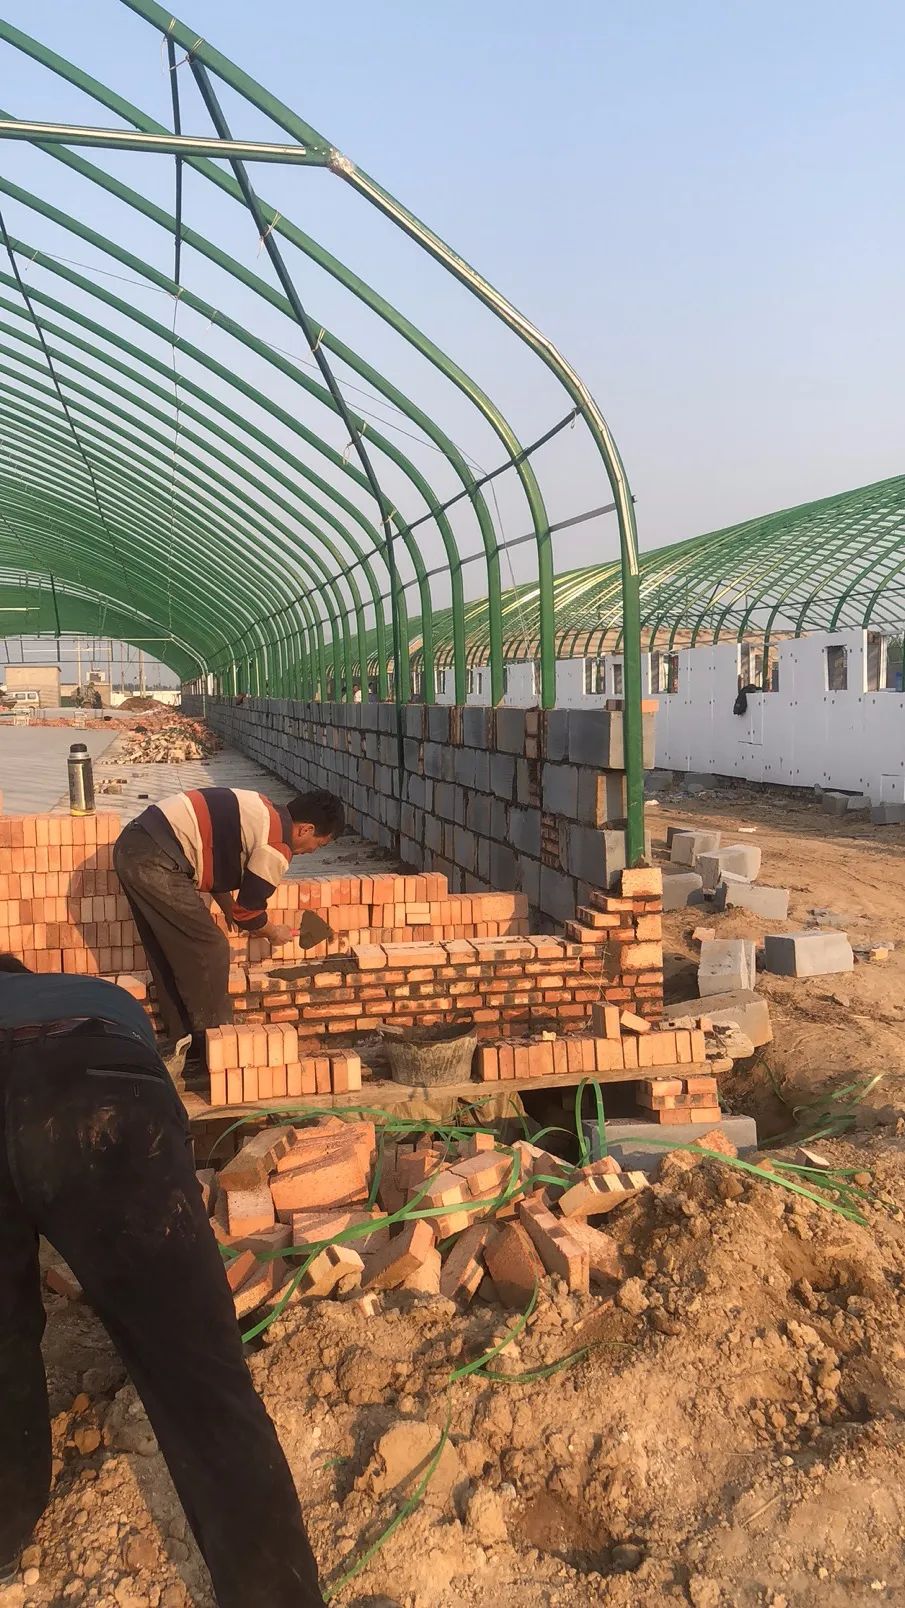 图说:大棚猪舍的建设 - 养猪场建设/养猪技术 - 中国